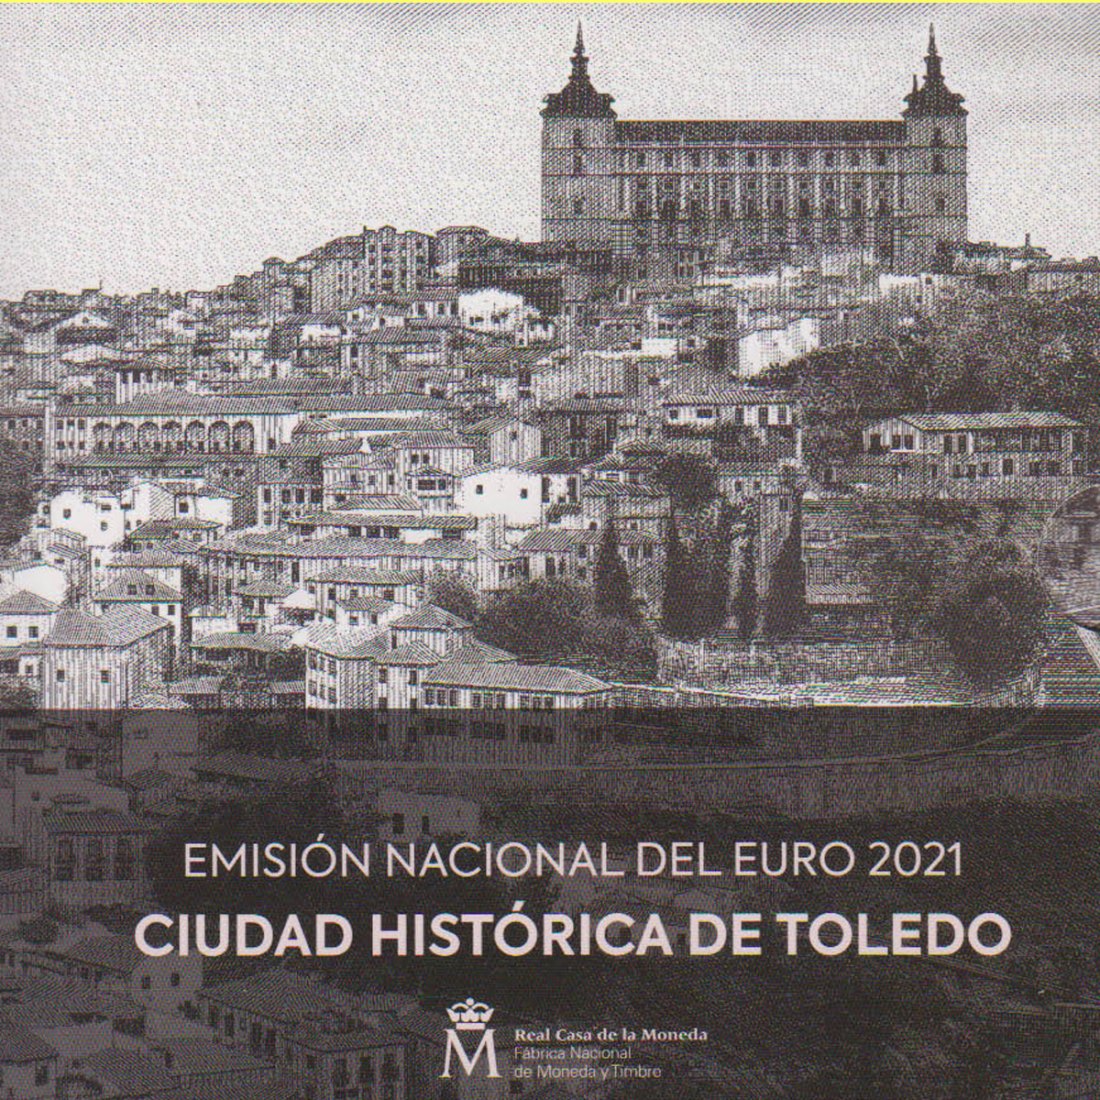  Offiz KMS Spanien *Historische Stadt Toledo* 2021 mit 2 €-Sondermünze 9M max 12.000St!   